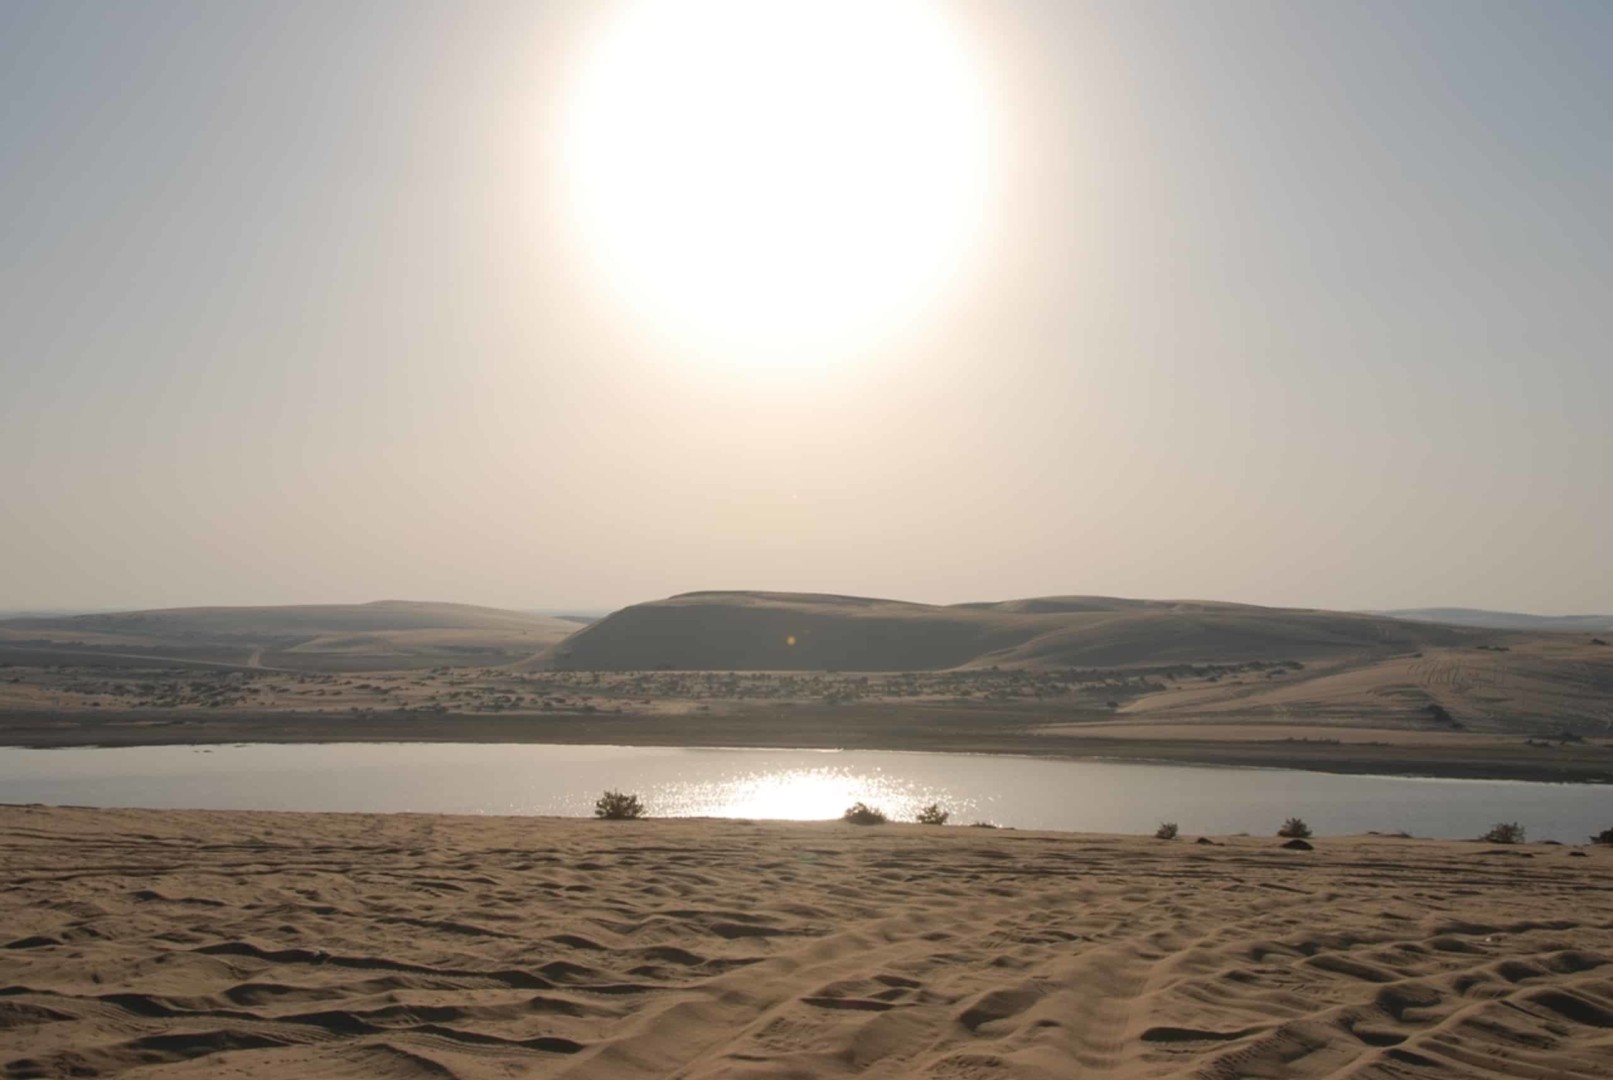 Qatar Sea and Sand